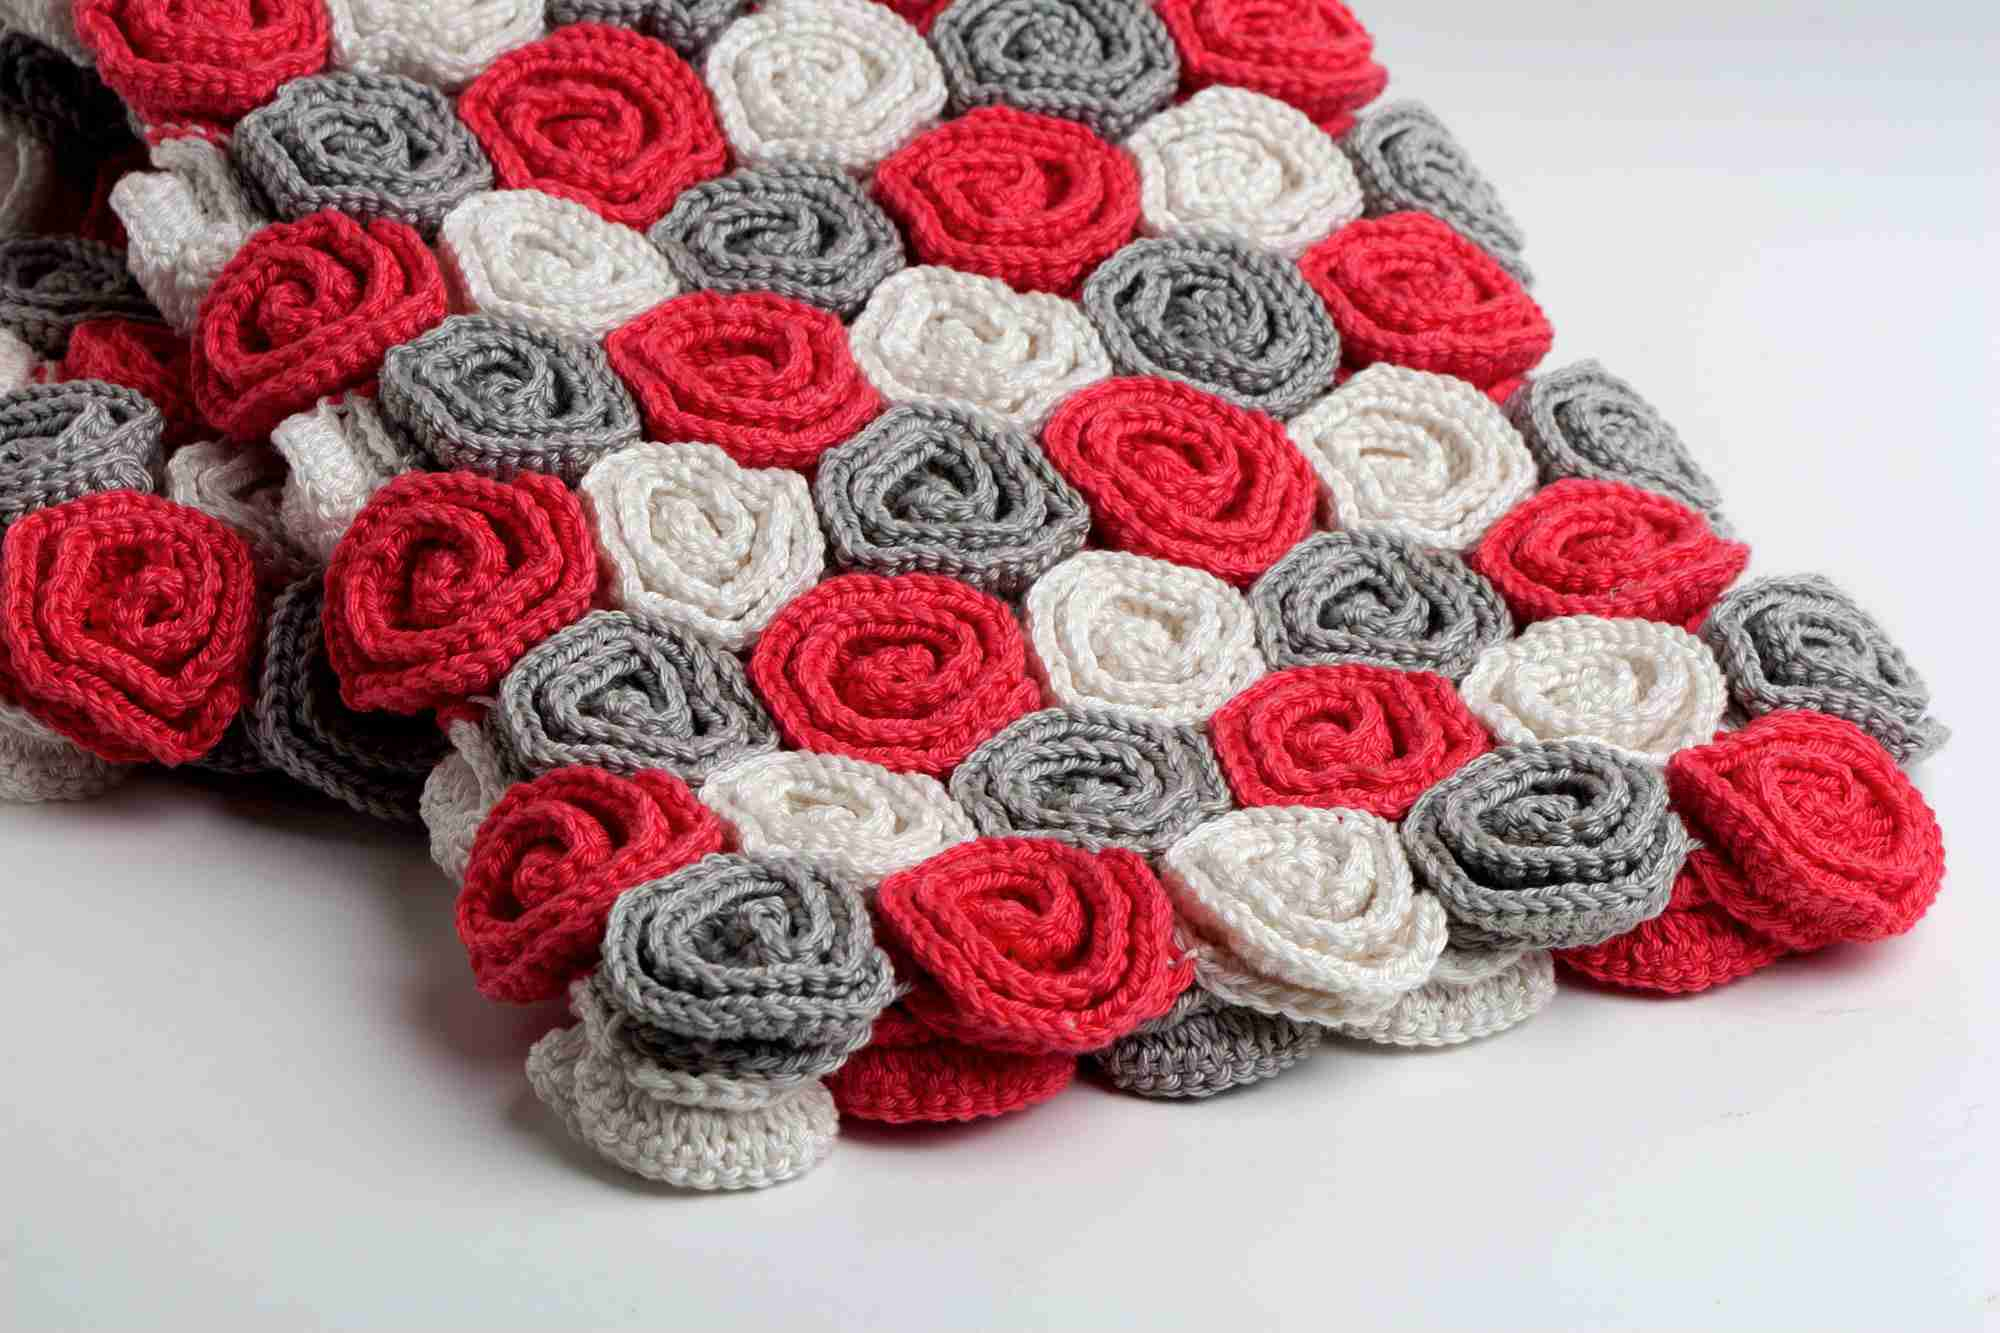 Easy Crochet Doily Patterns For Beginners 9 Crochet Patterns For Roses